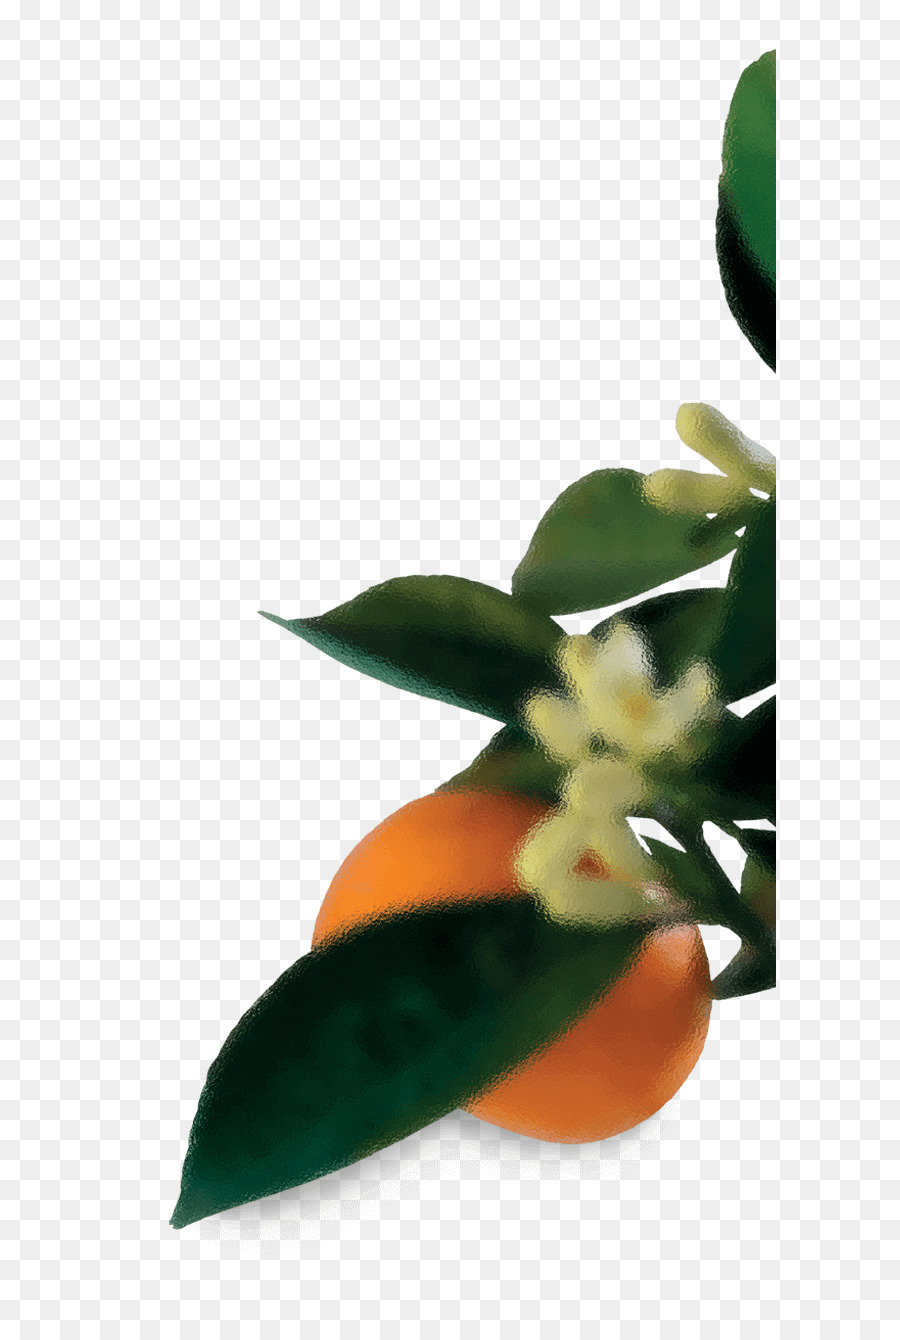 Foglia Vaso di Close-up di un Petalo di Frutta - foglia